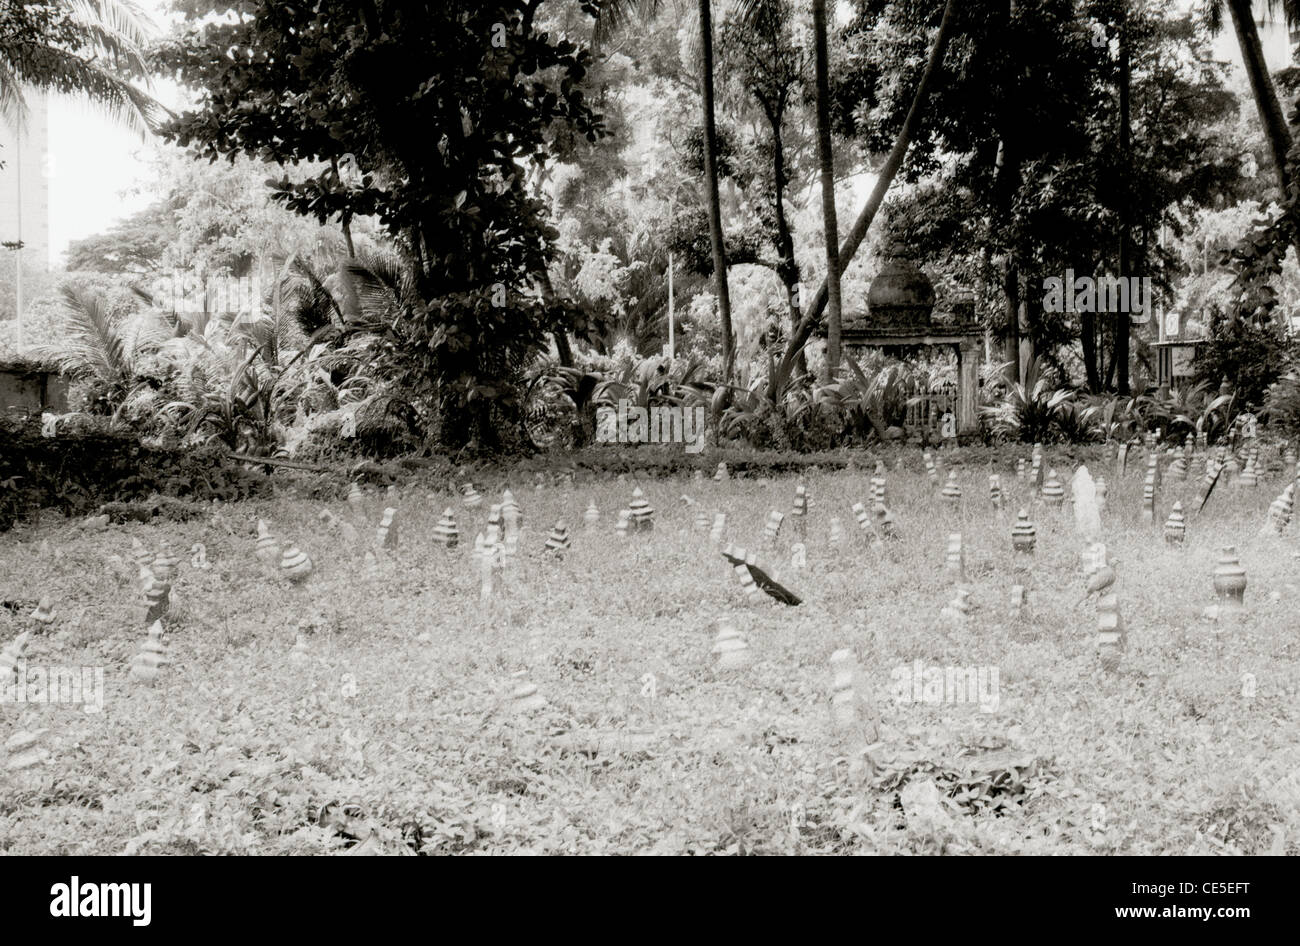 Reisen Fotografie - Kampong Glam Friedhof in Kampong Glam arabischen Viertel in Singapur in Südostasien im Fernen Osten. Stockfoto